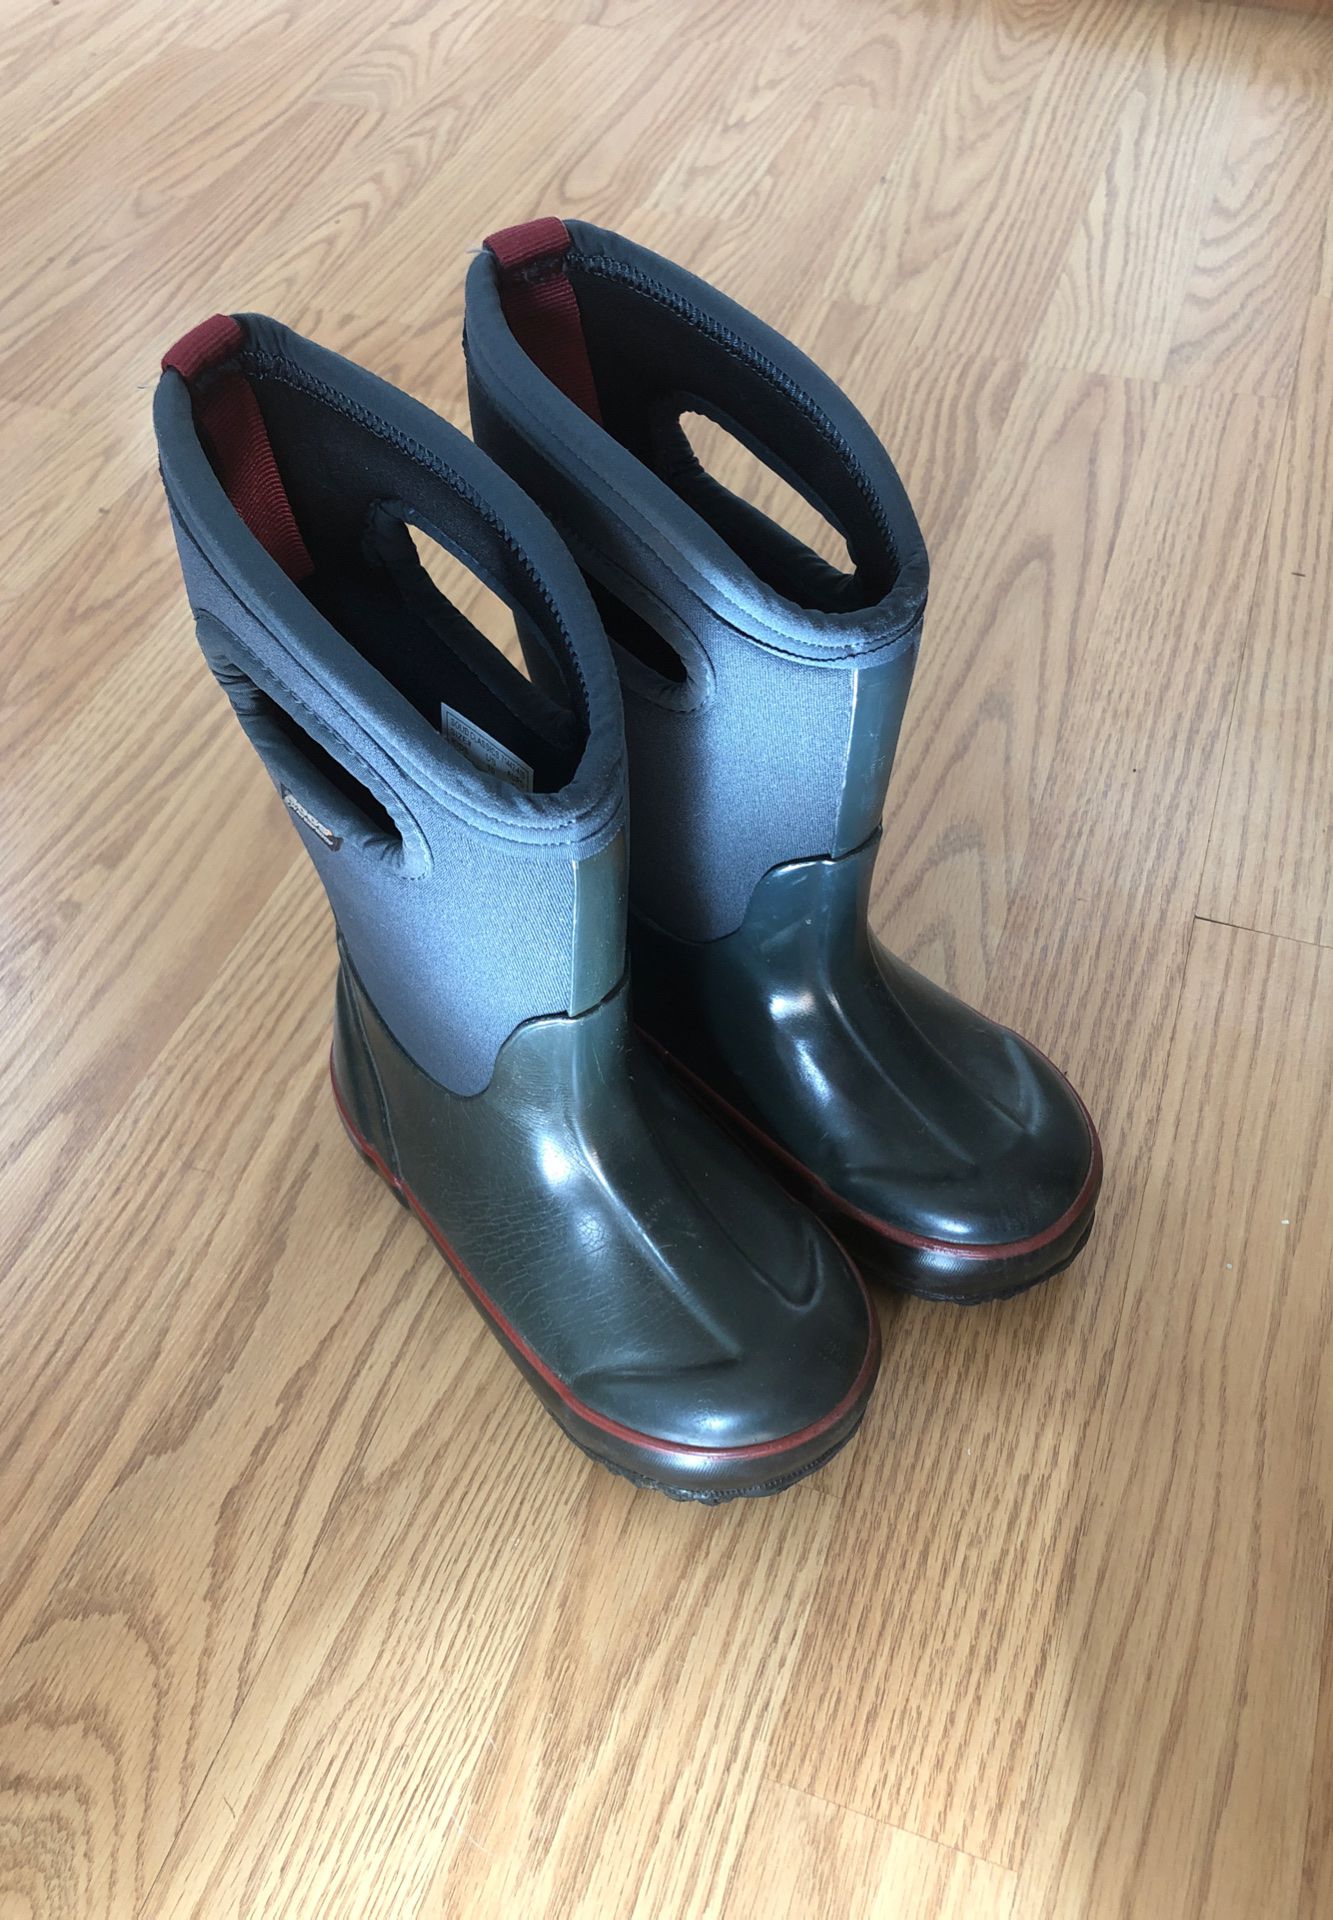 Kids BOGS rain/snow boots size 10